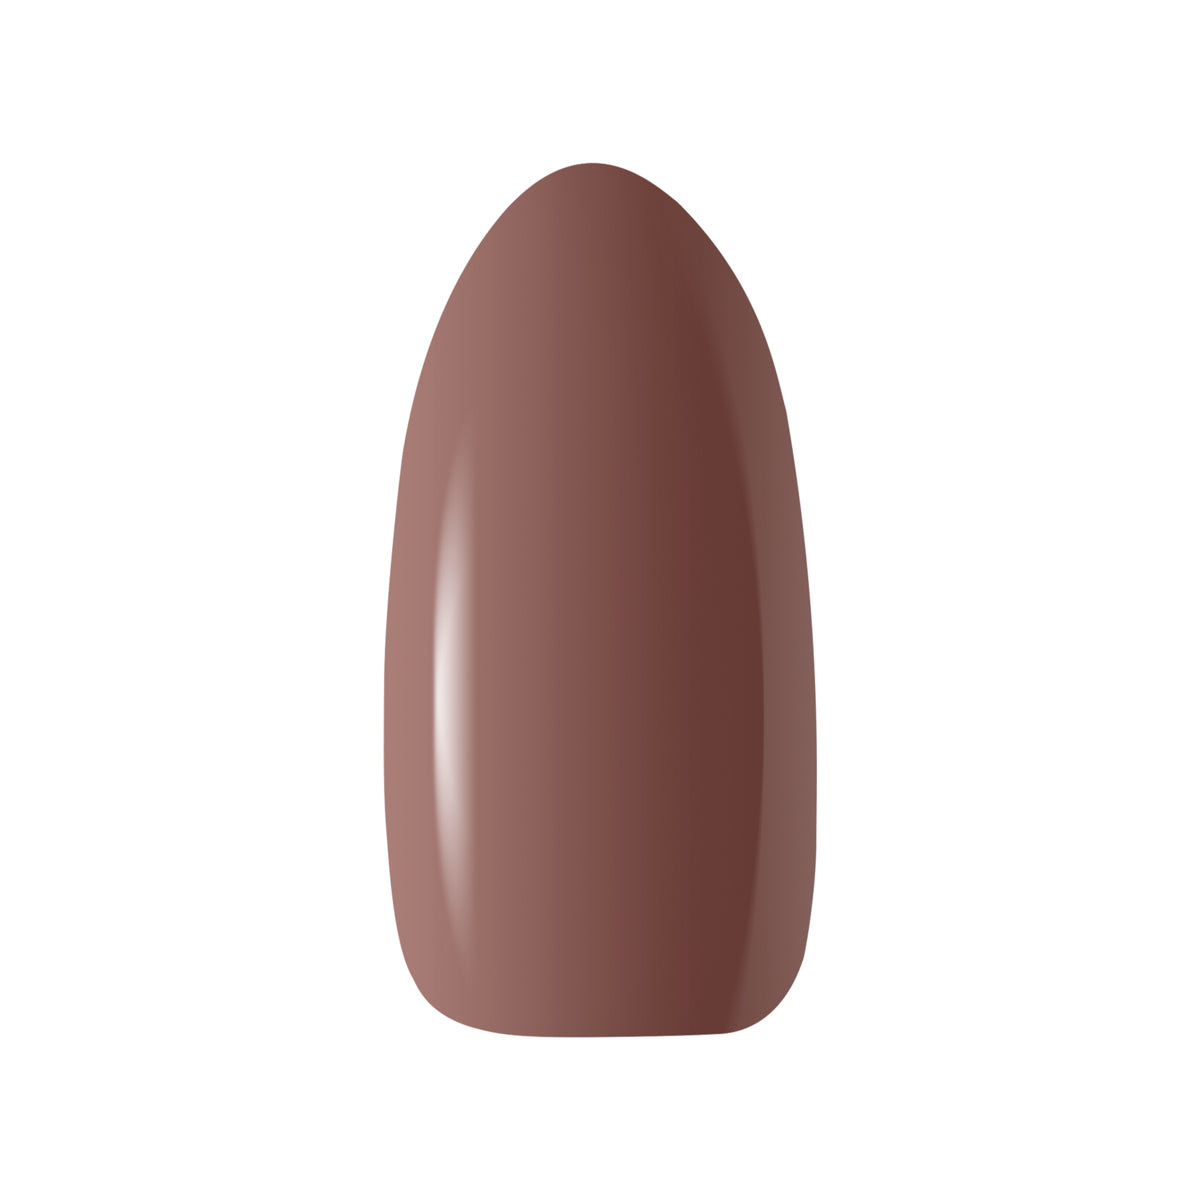 OCHO NAILS Hybrid nail polish brown 806 -5 g